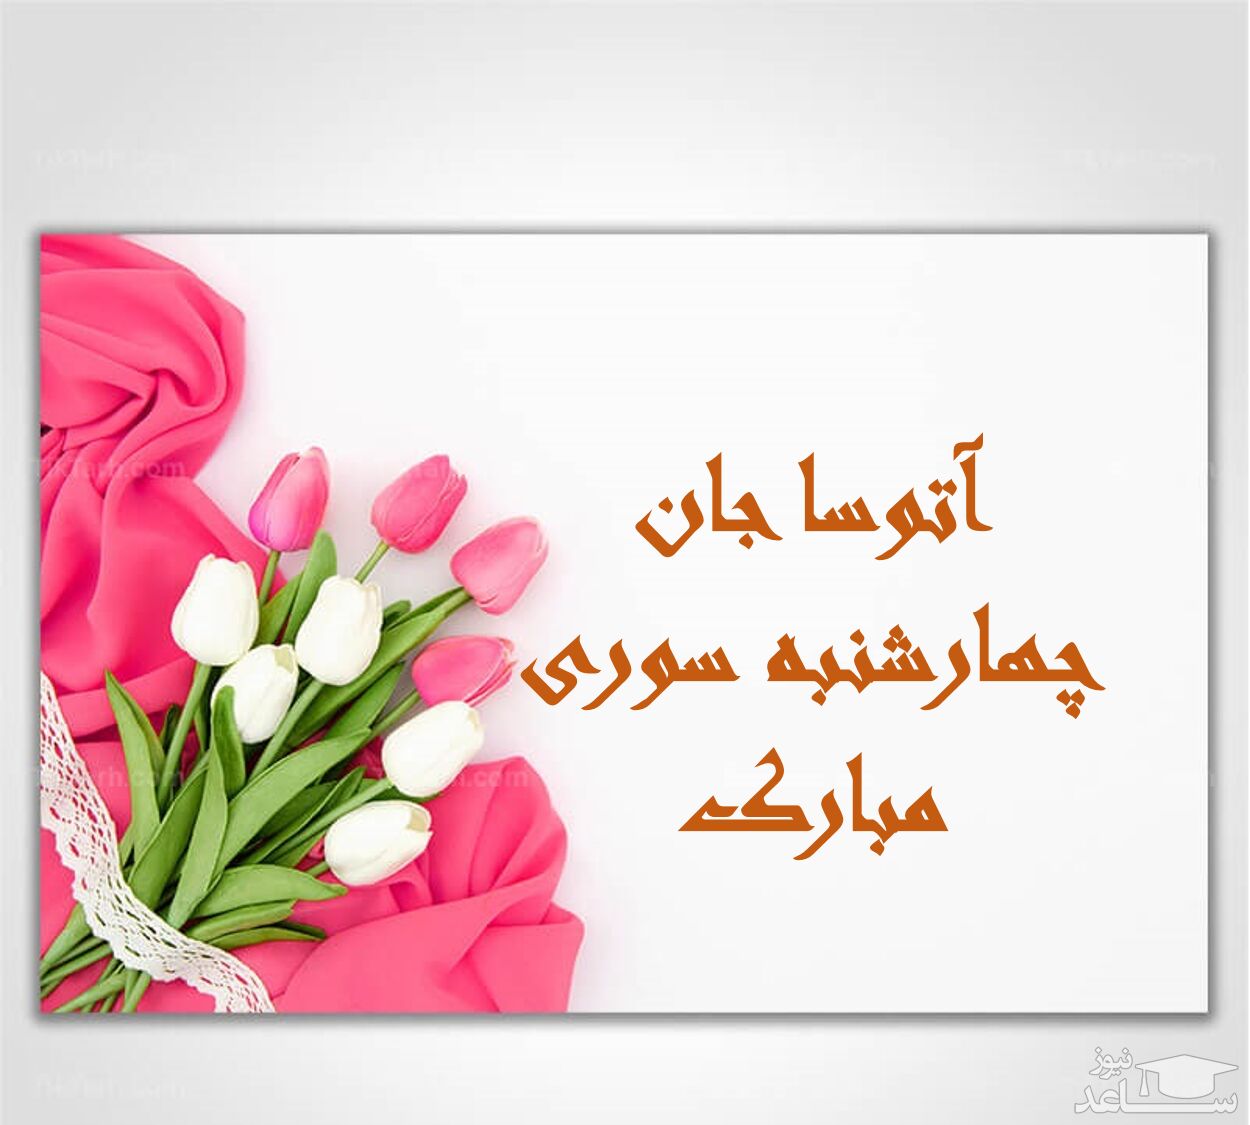 زیباترین پیام های تبریک چهارشنبه سوری برای آتوسا